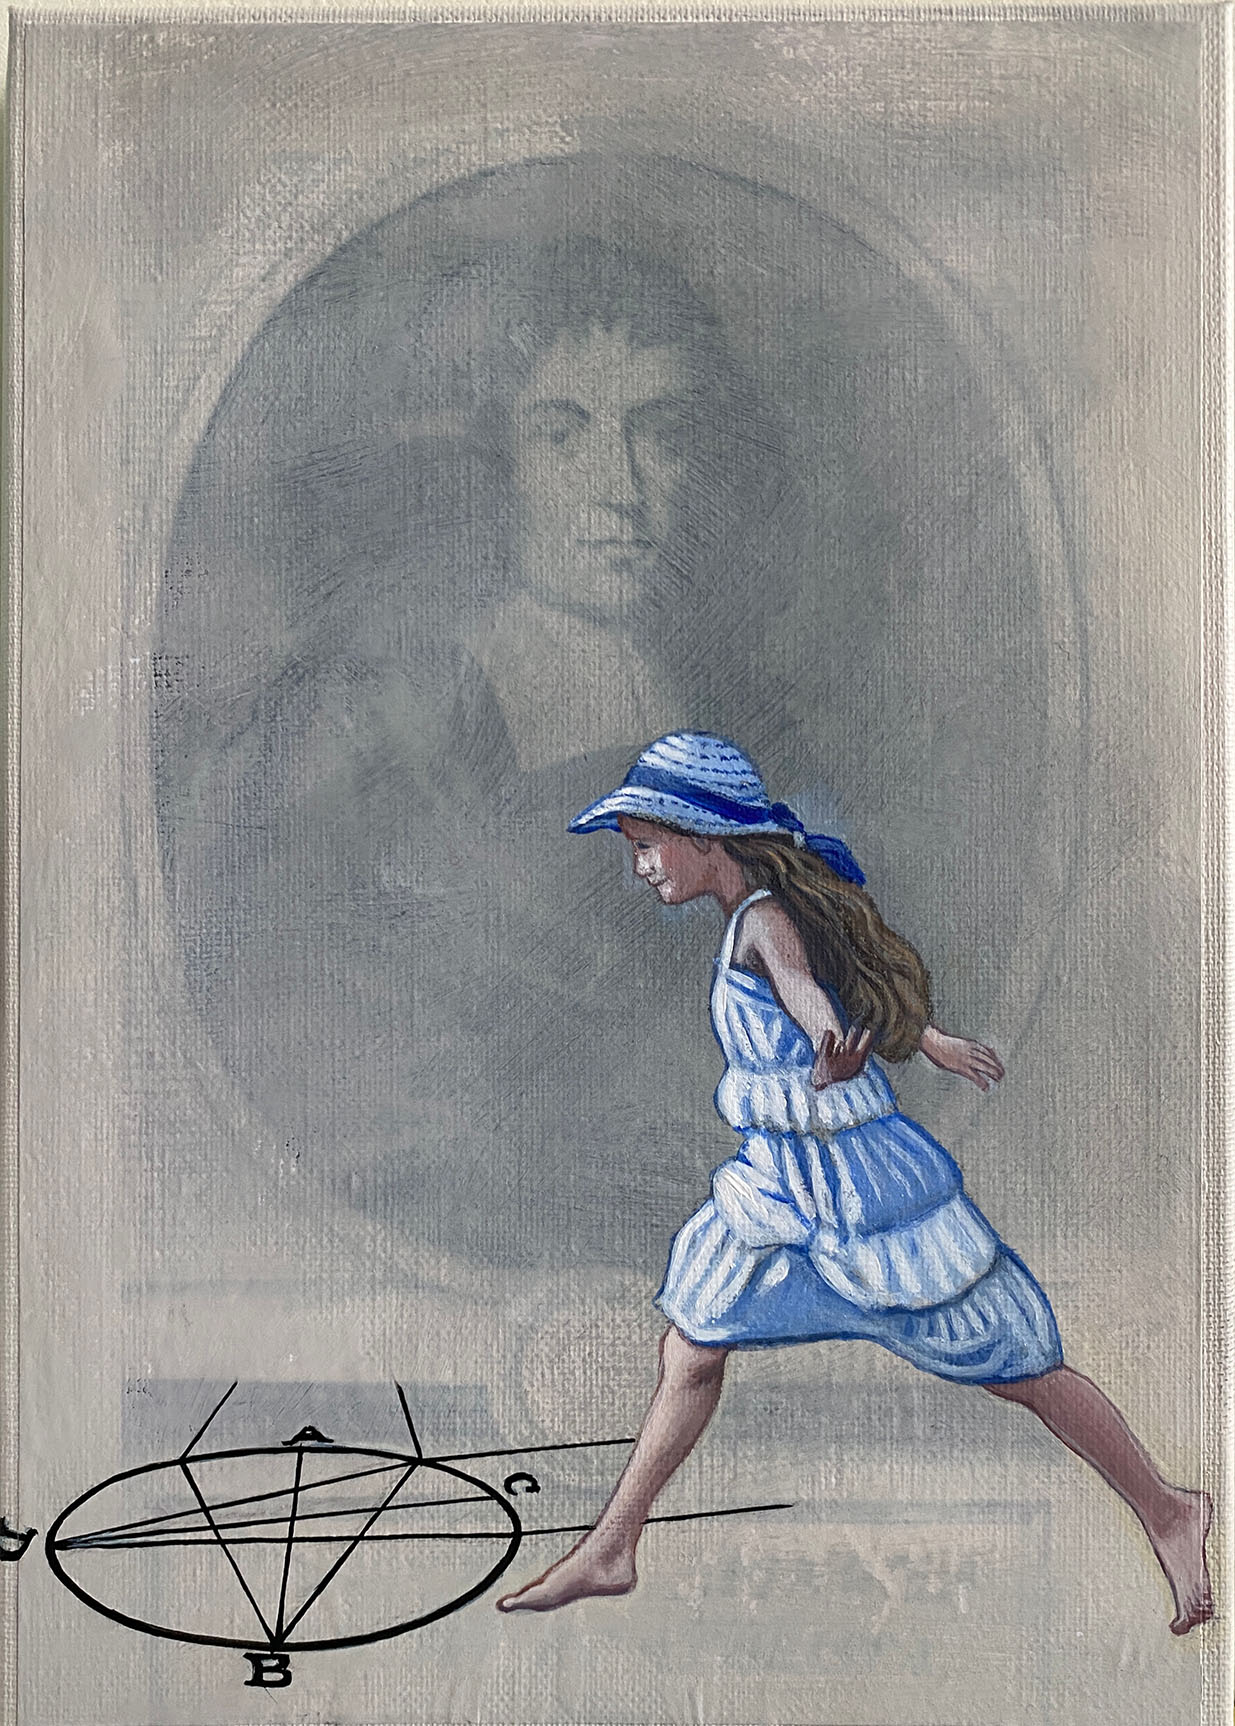 Cristina Ruiz Guinazu, L'oeil de Spinoza, collage and acrylics on canvas, 27 x 19 cm, 2021